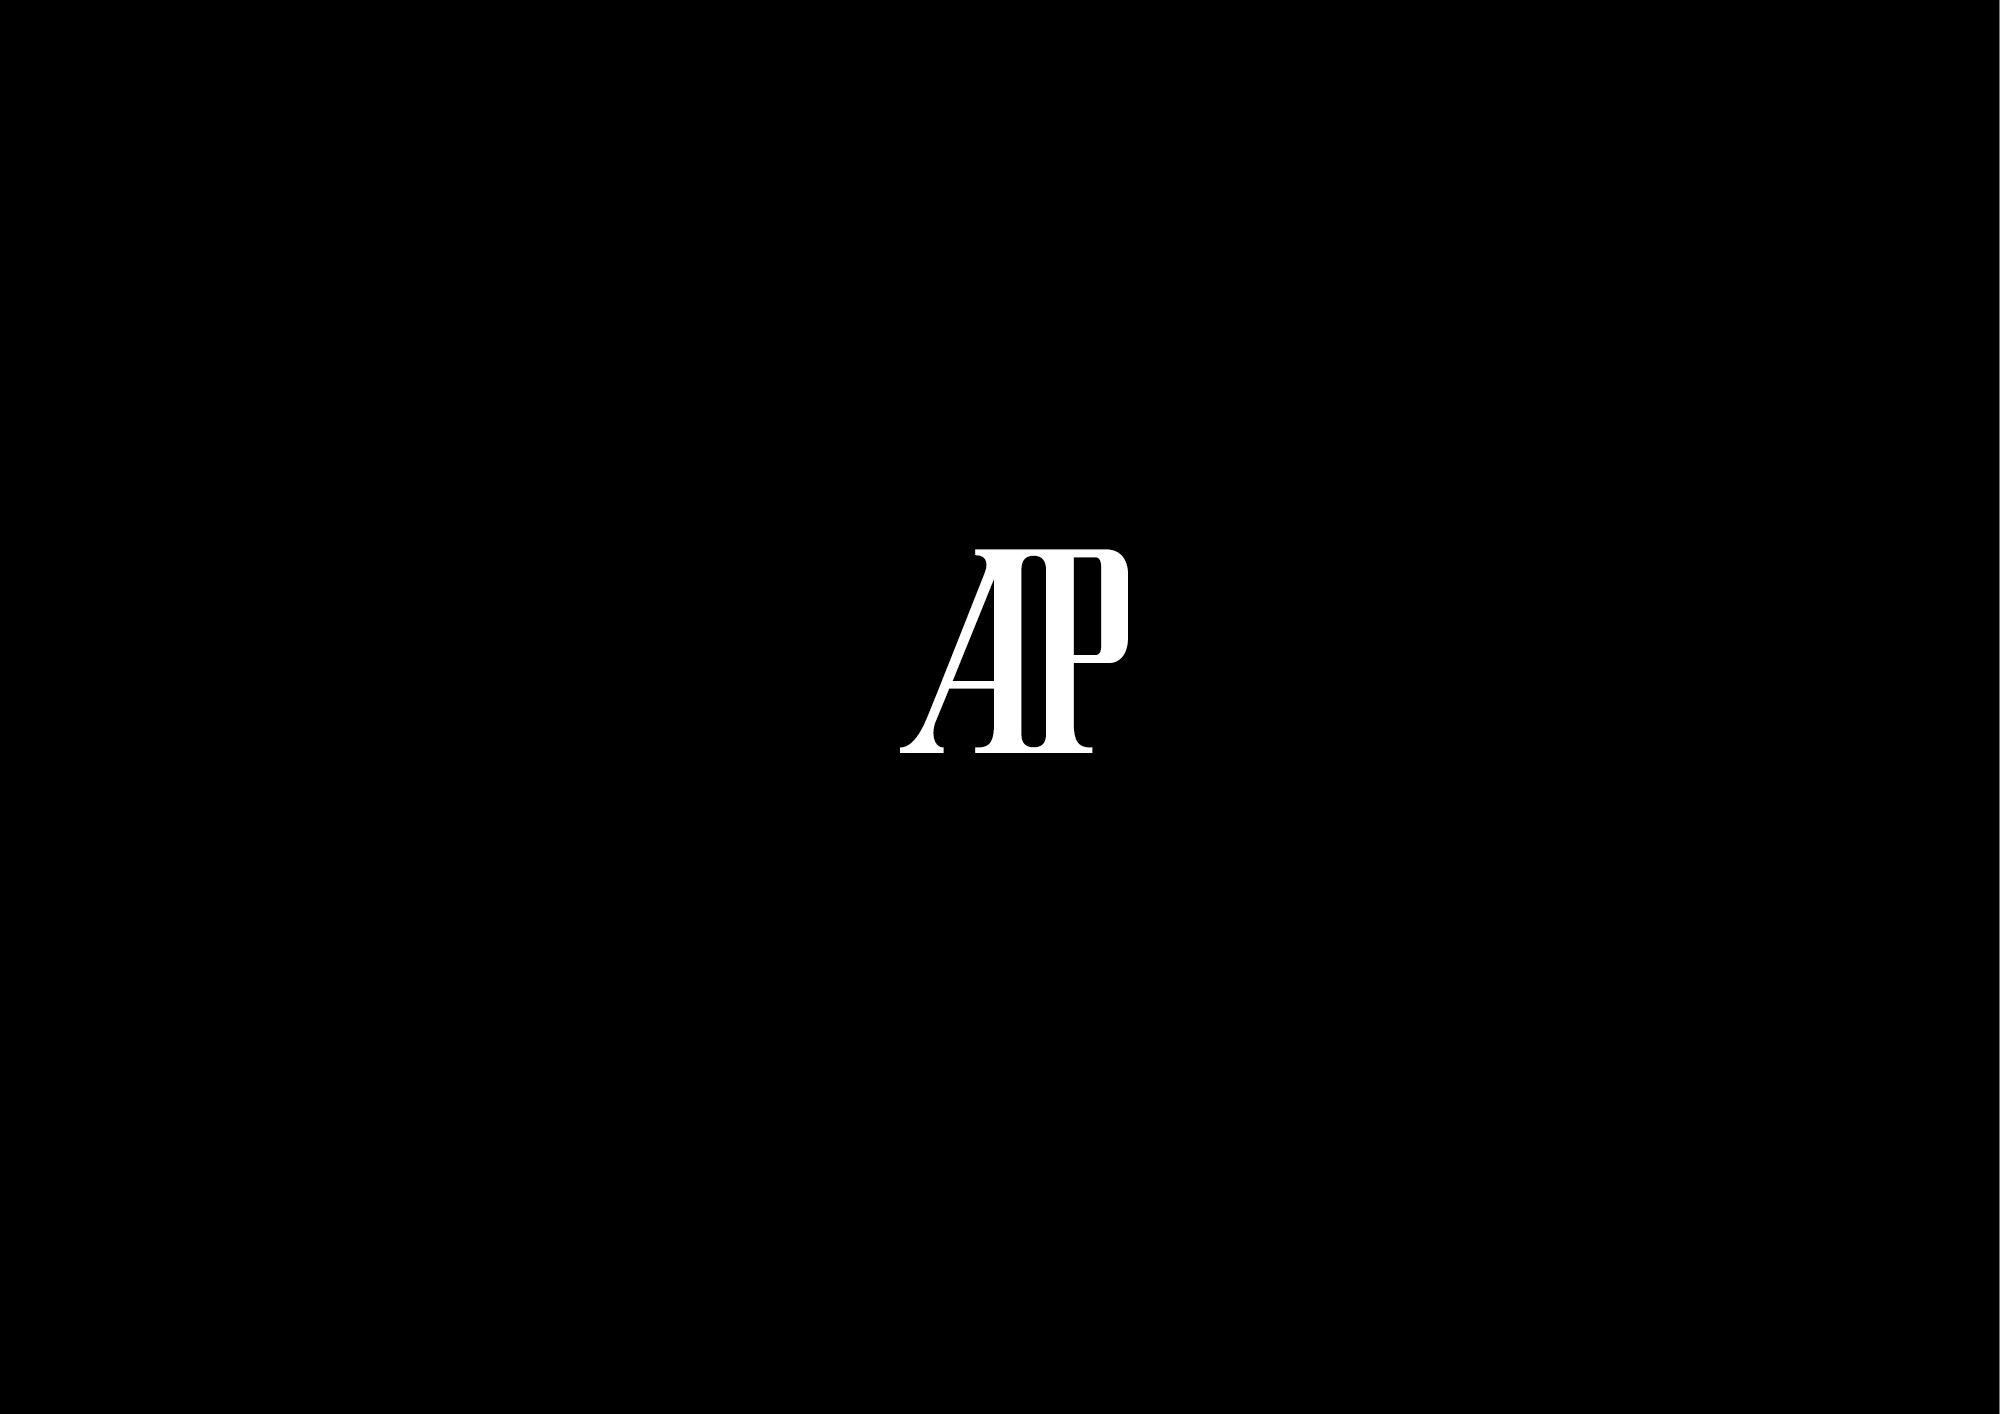 Audemars Piguet Logo - Audemars piguet Logos